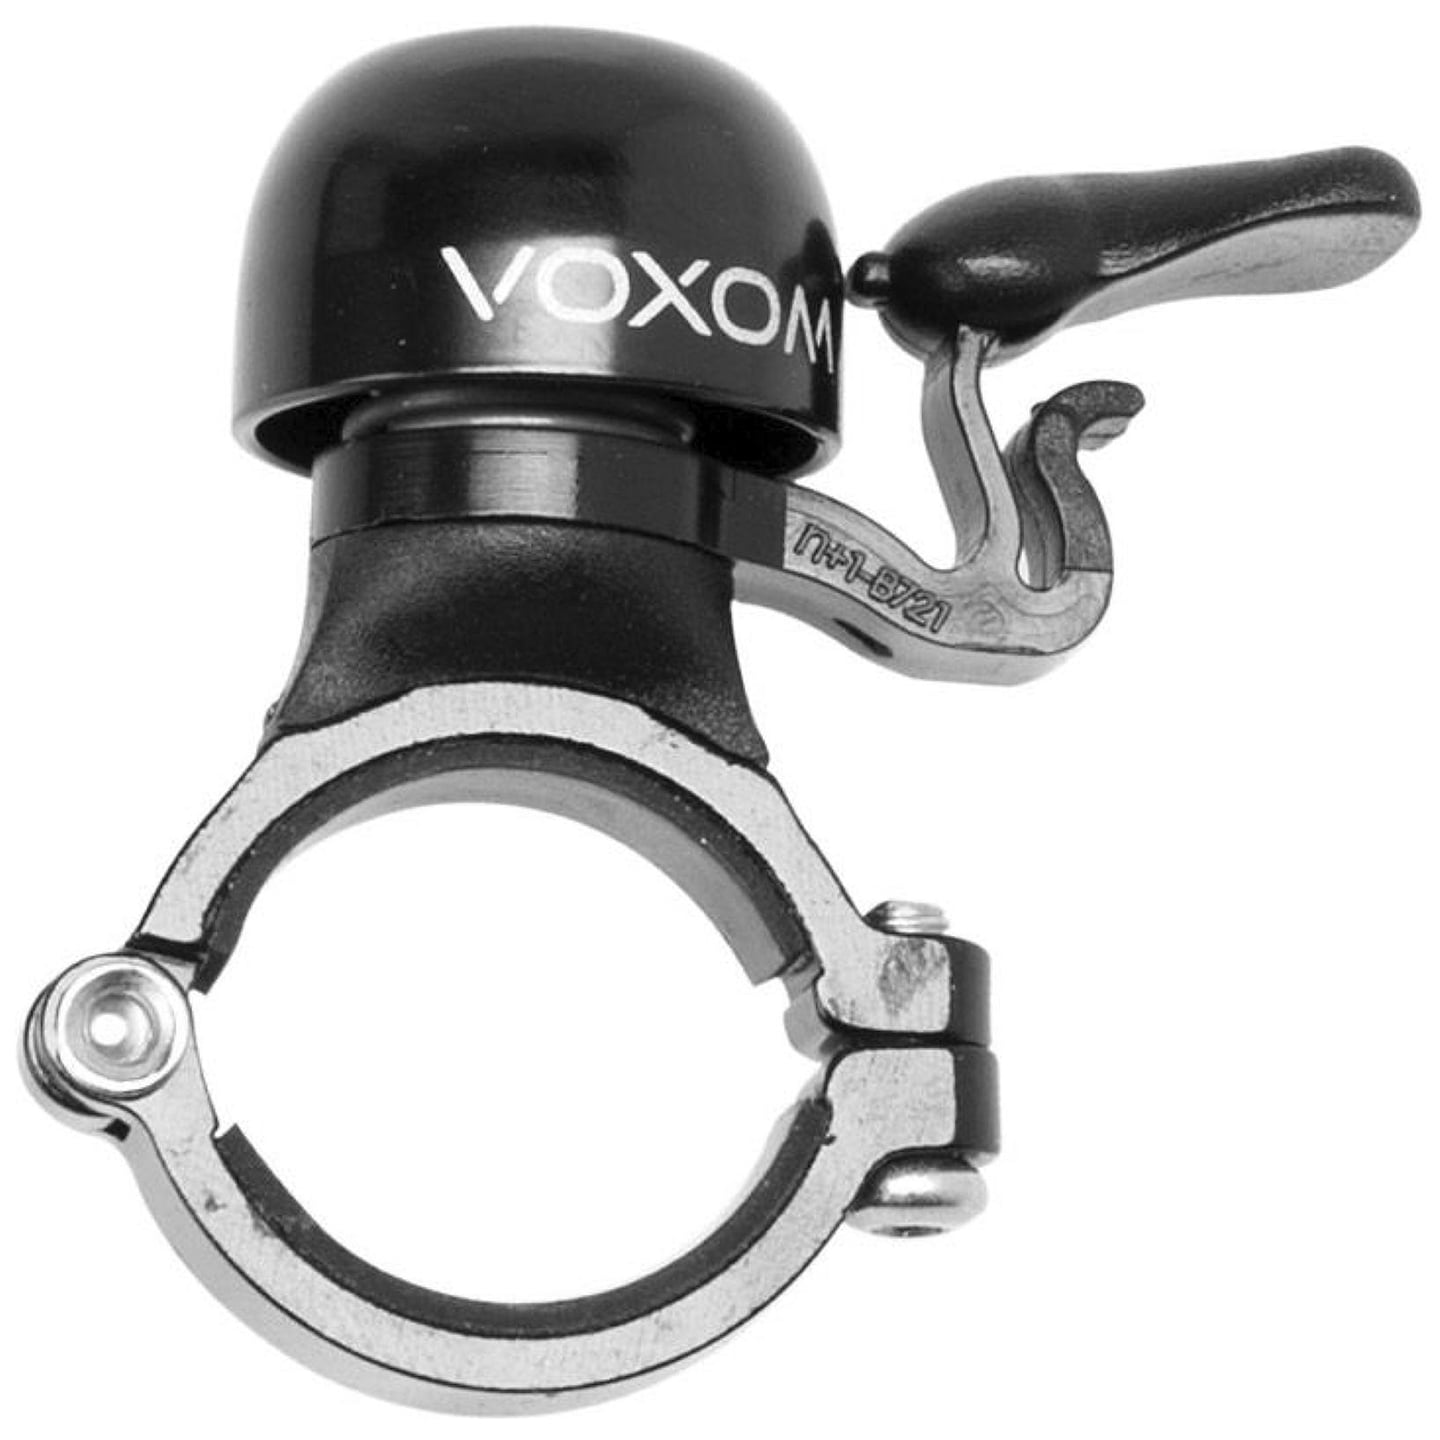 VOXOM KL6 Bell, Bike accessories